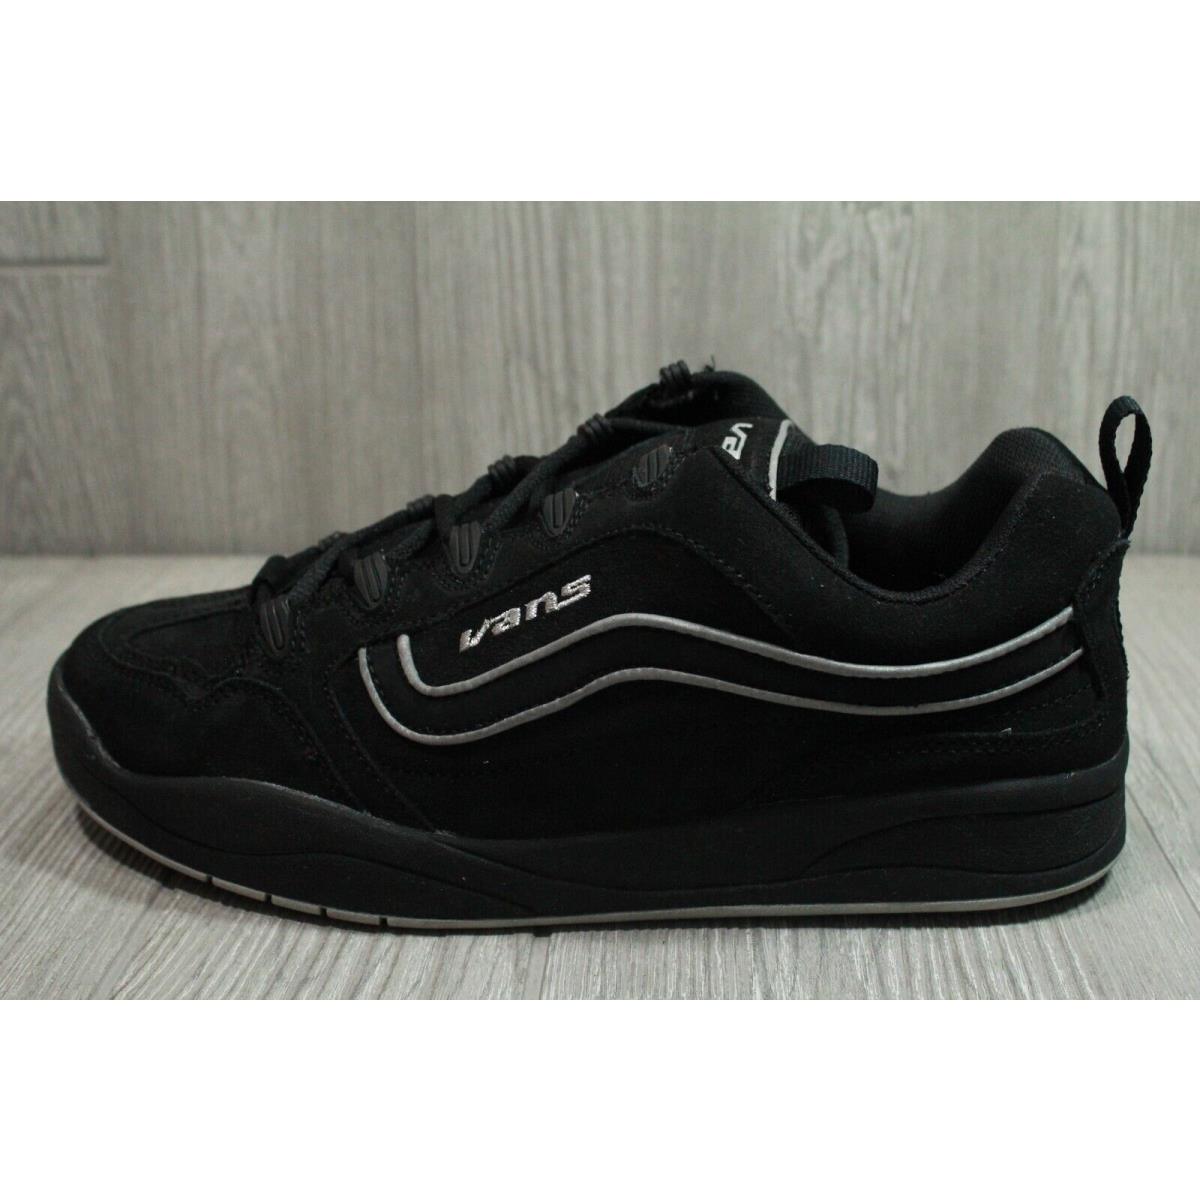 Vintage Vans Floyd Skate Shoes Black 2004 Mens Size 10.5 11 12 Oss | 060472856734 - Vans shoes - Black |